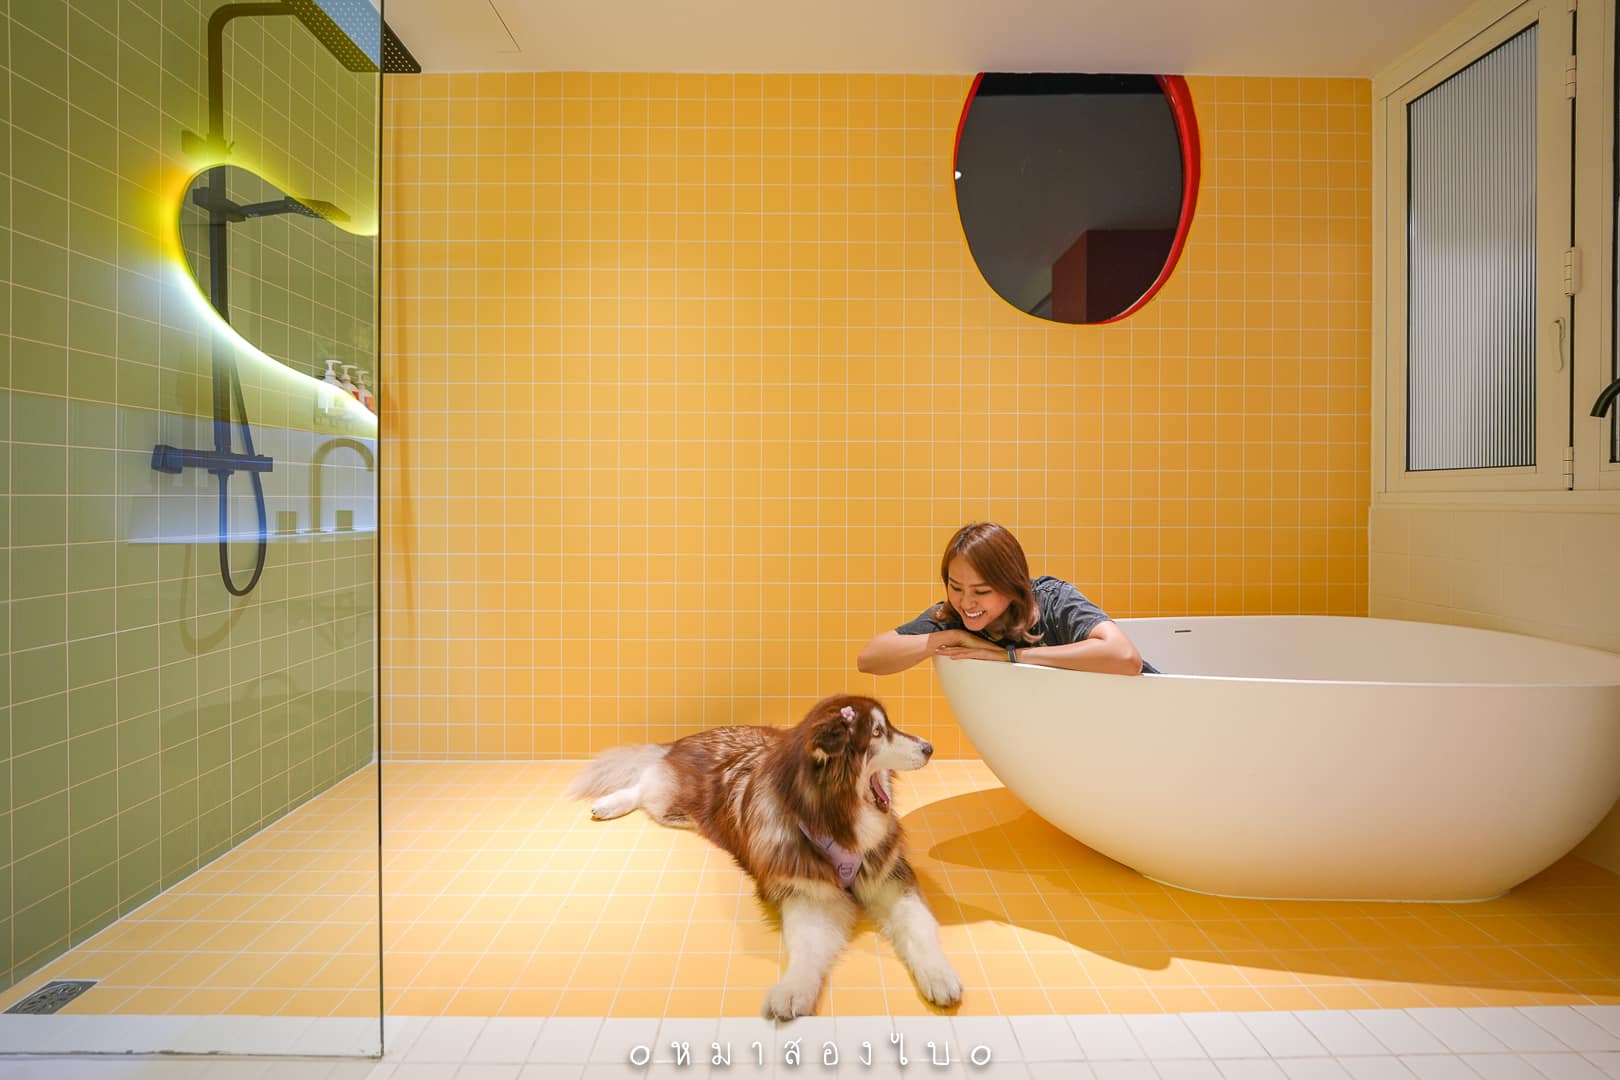 The Fig Lobby โรงแรมน้องหมาแมวพักได้ กรุงเทพ ใจกลางคลองเตย สีสันสดใส หมาใหญ่พักได้ด้วย